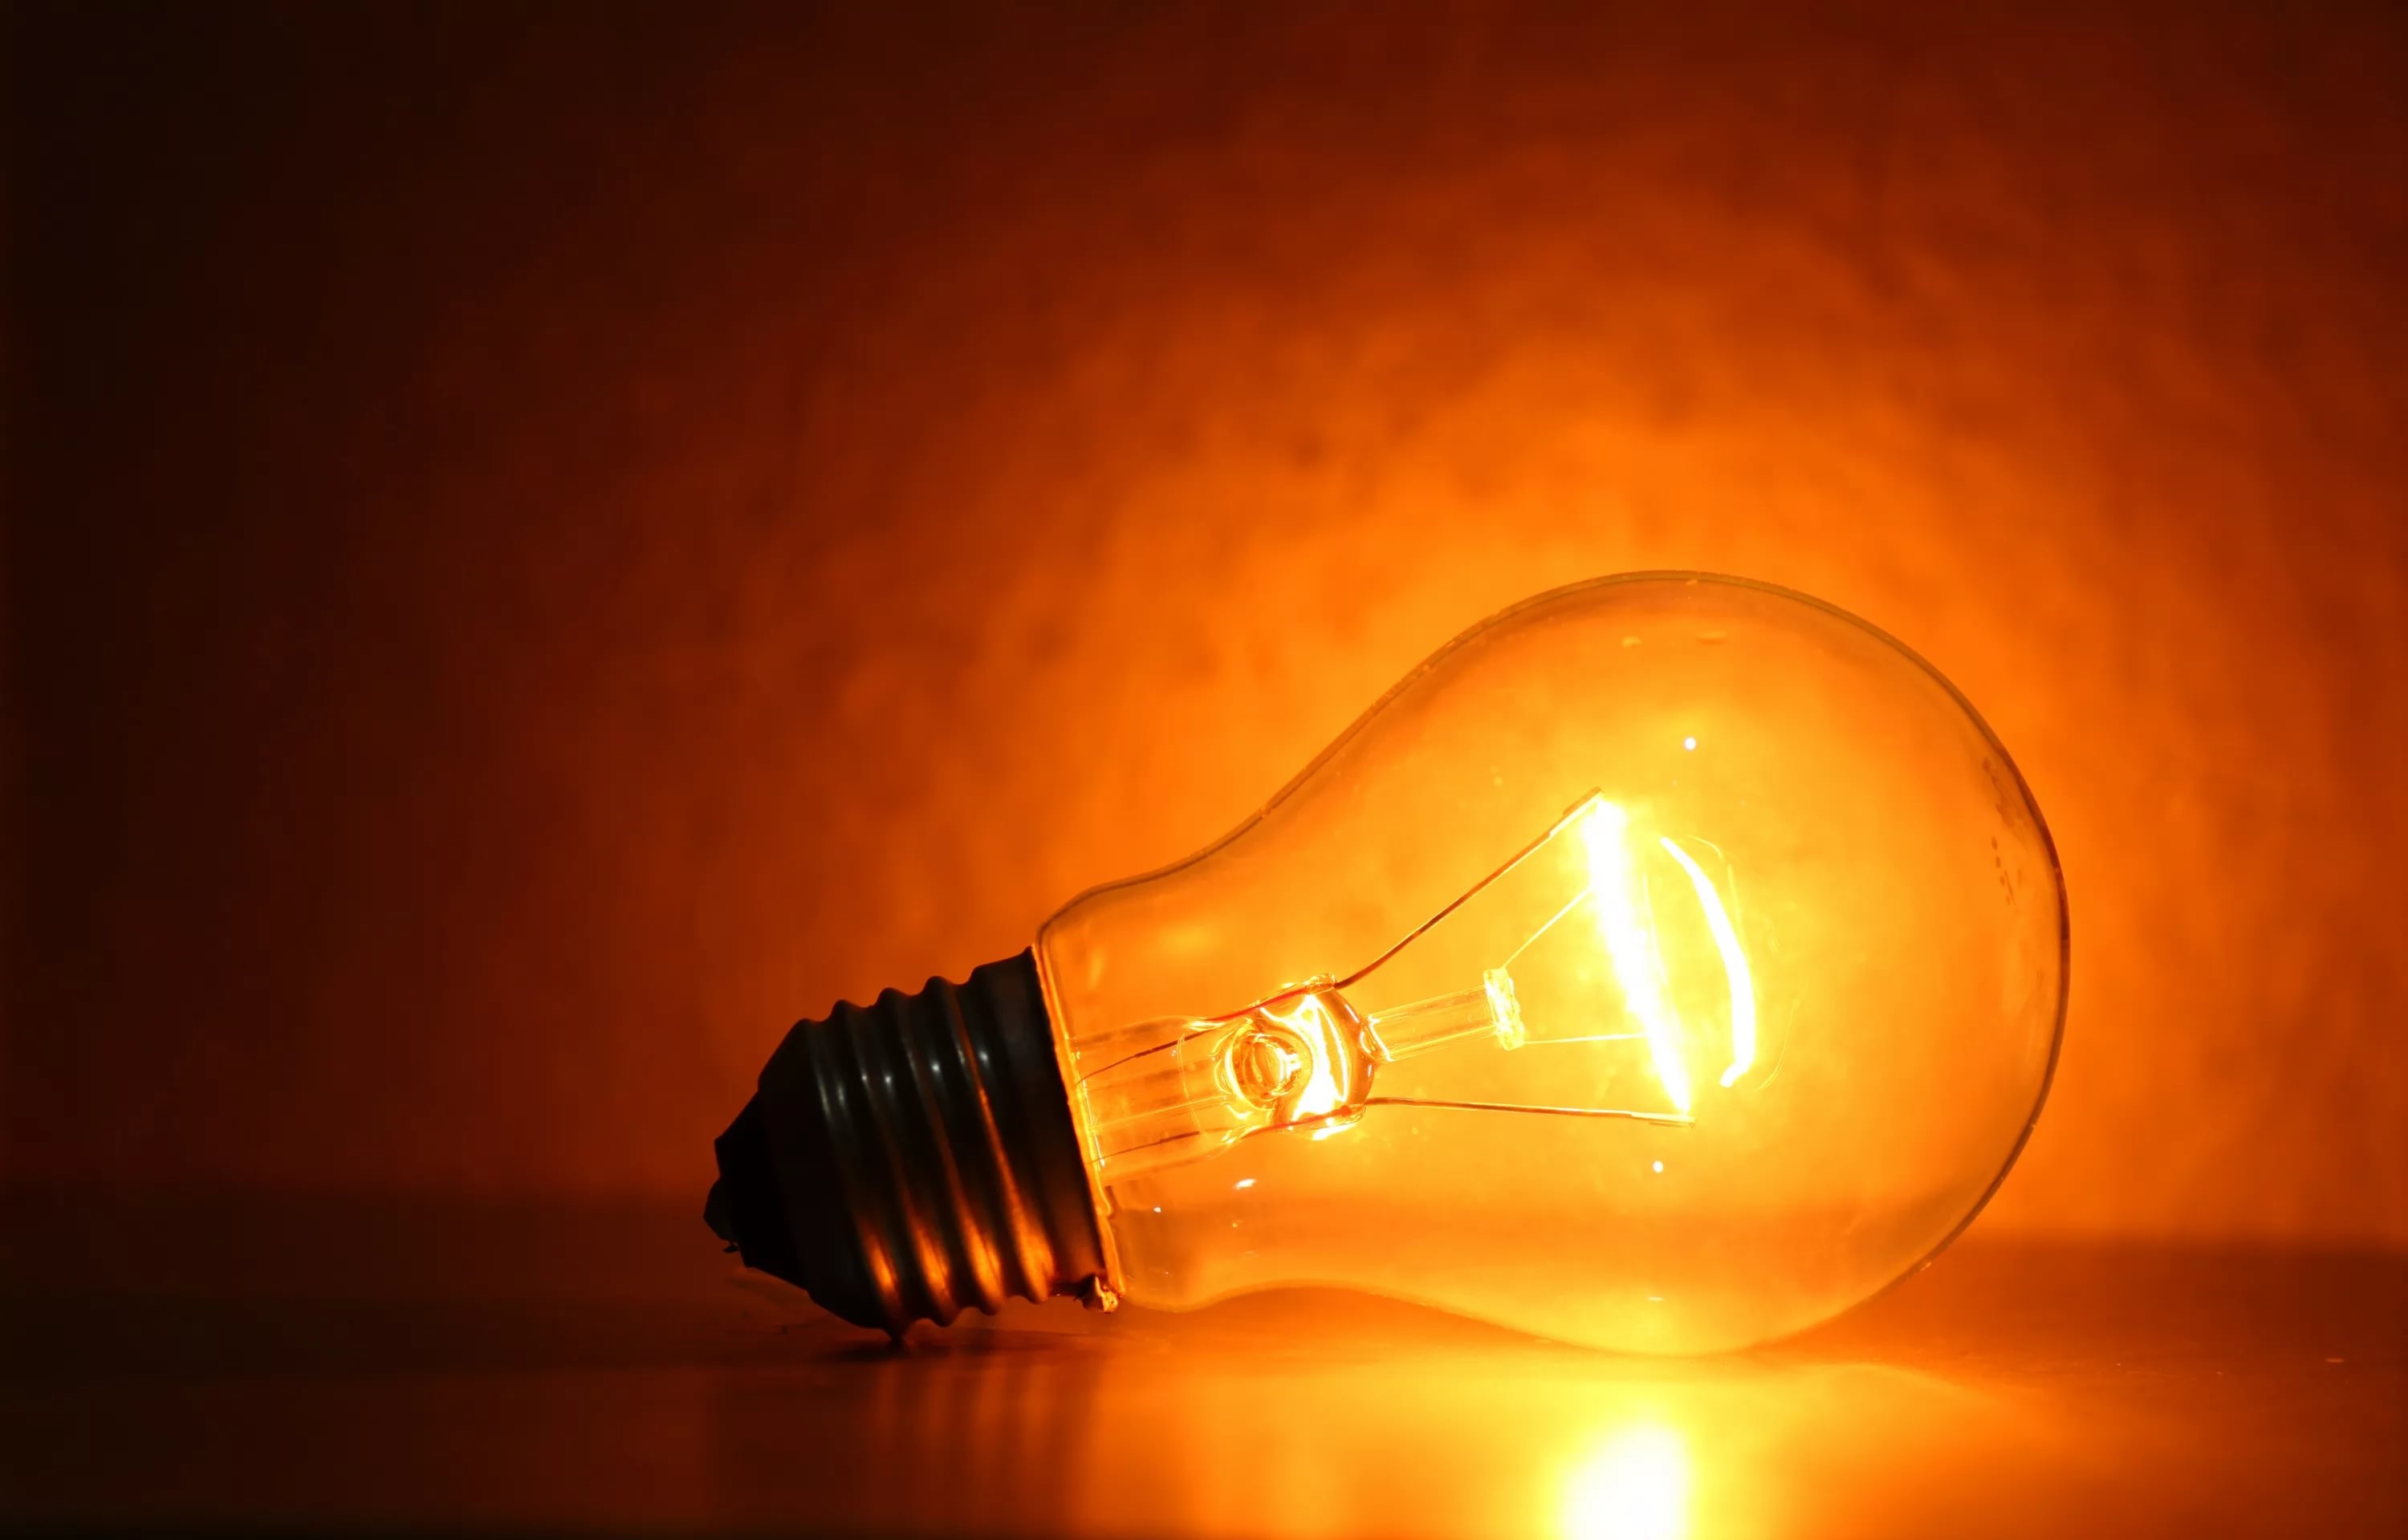 До пяти в одни руки: в Украине стартовала запись на получение бесплатных LED-ламп